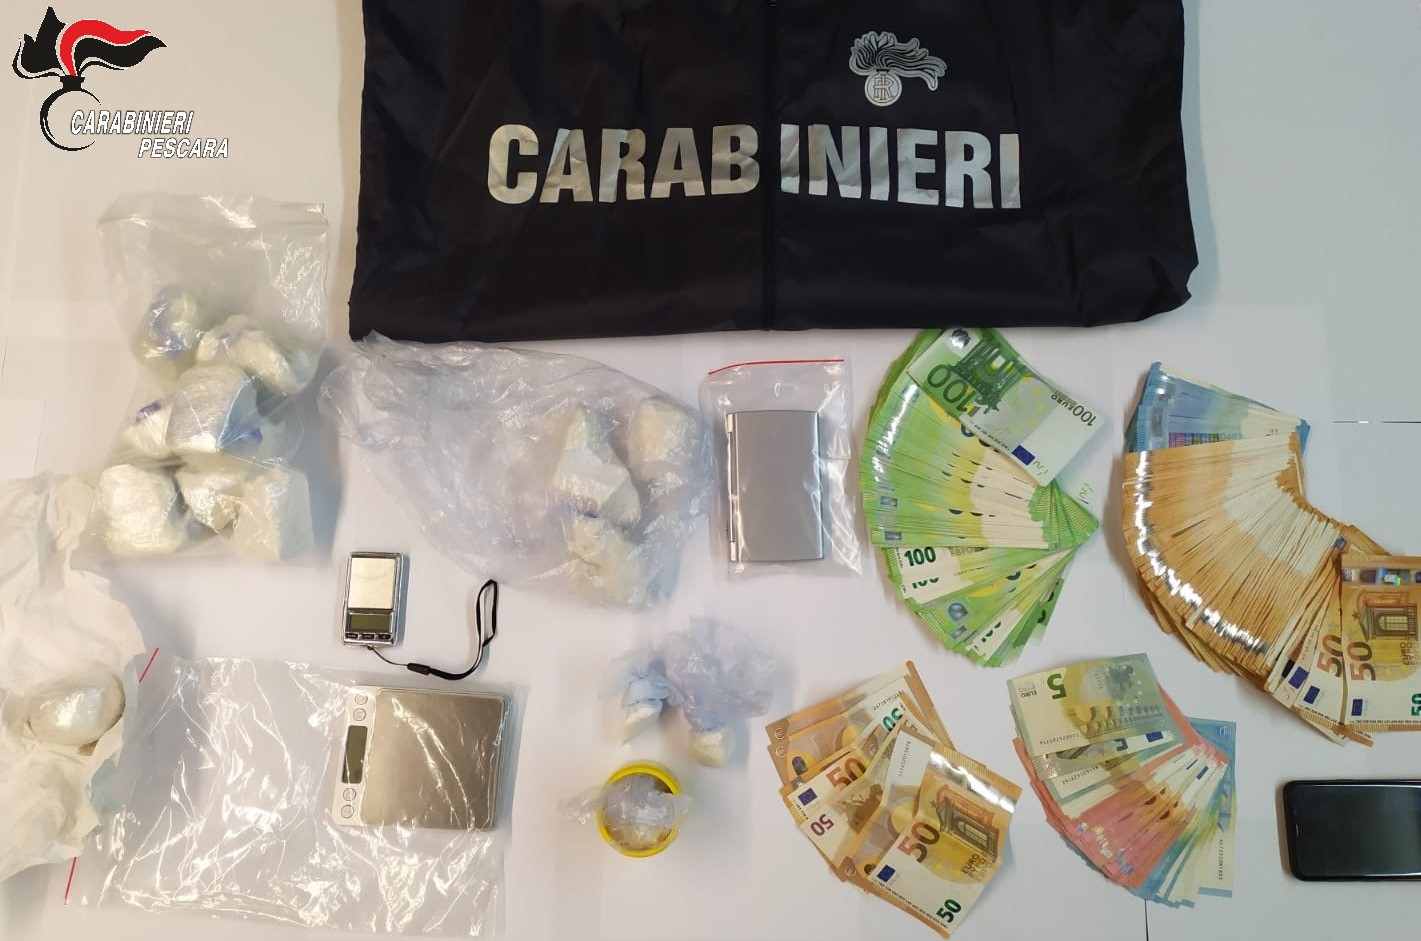 Scoperto deposito di droga a Pescara. I Carabinieri arrestano 2 persone